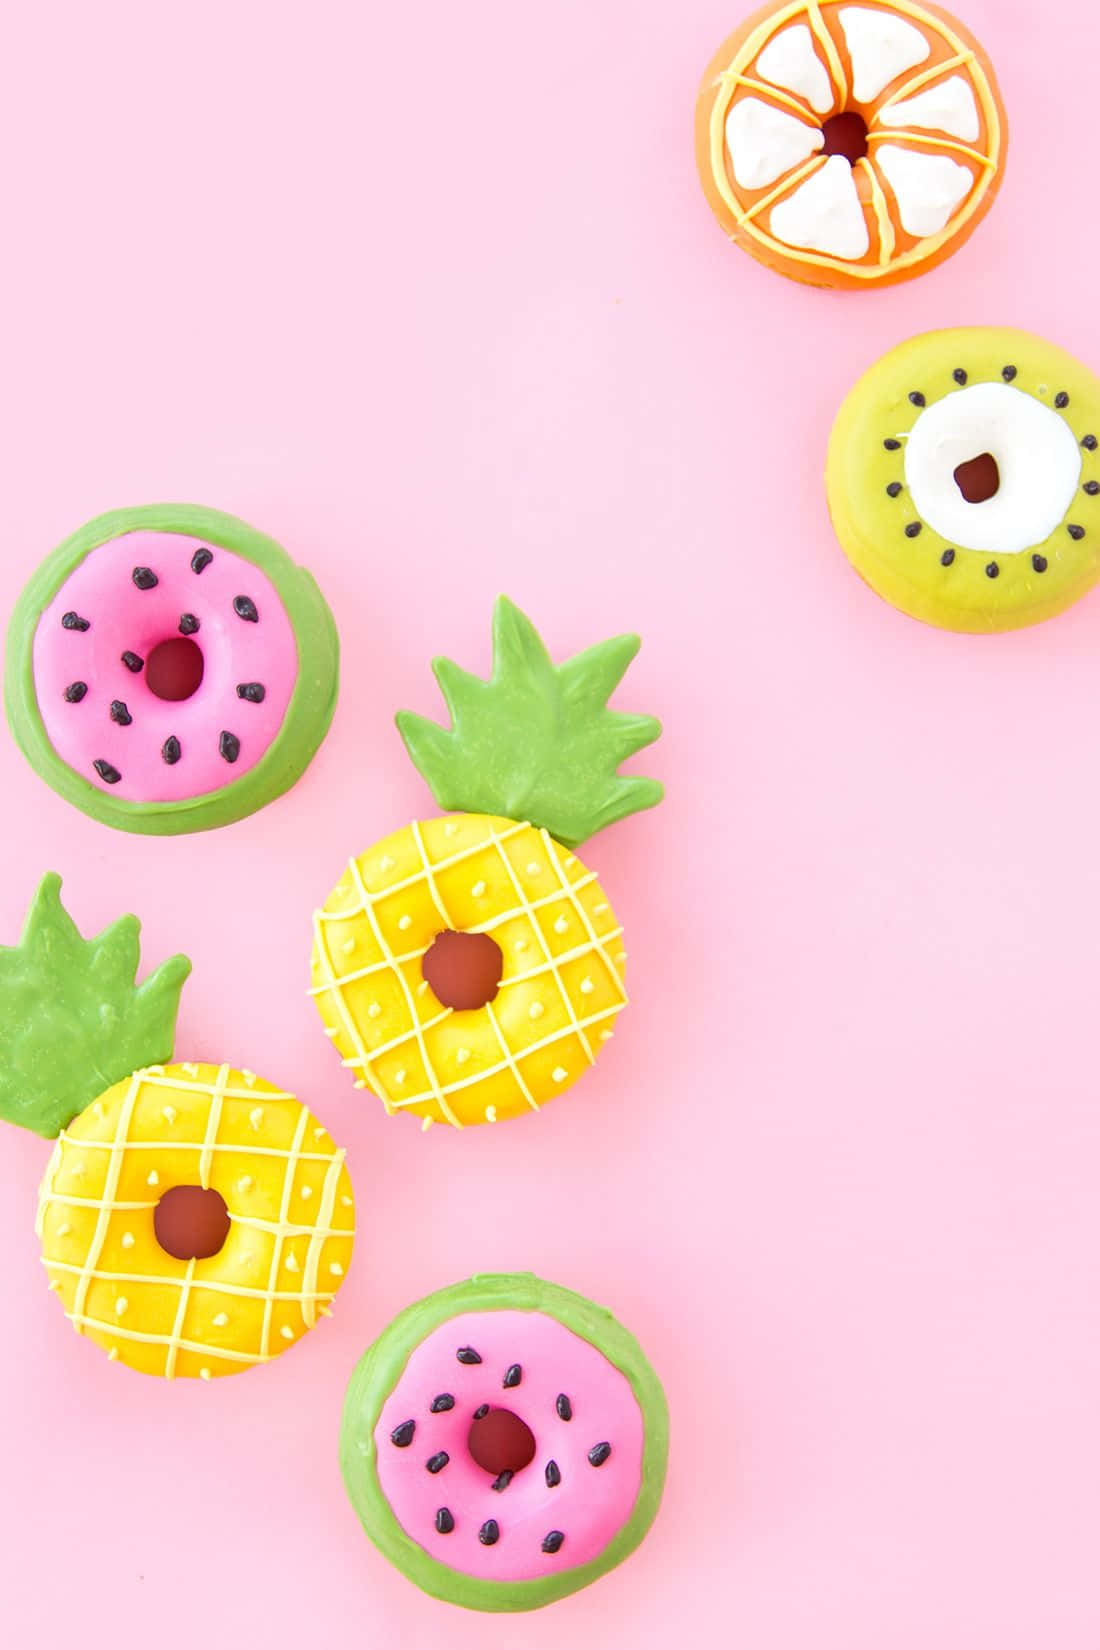 Cute Donut Delight Wallpaper